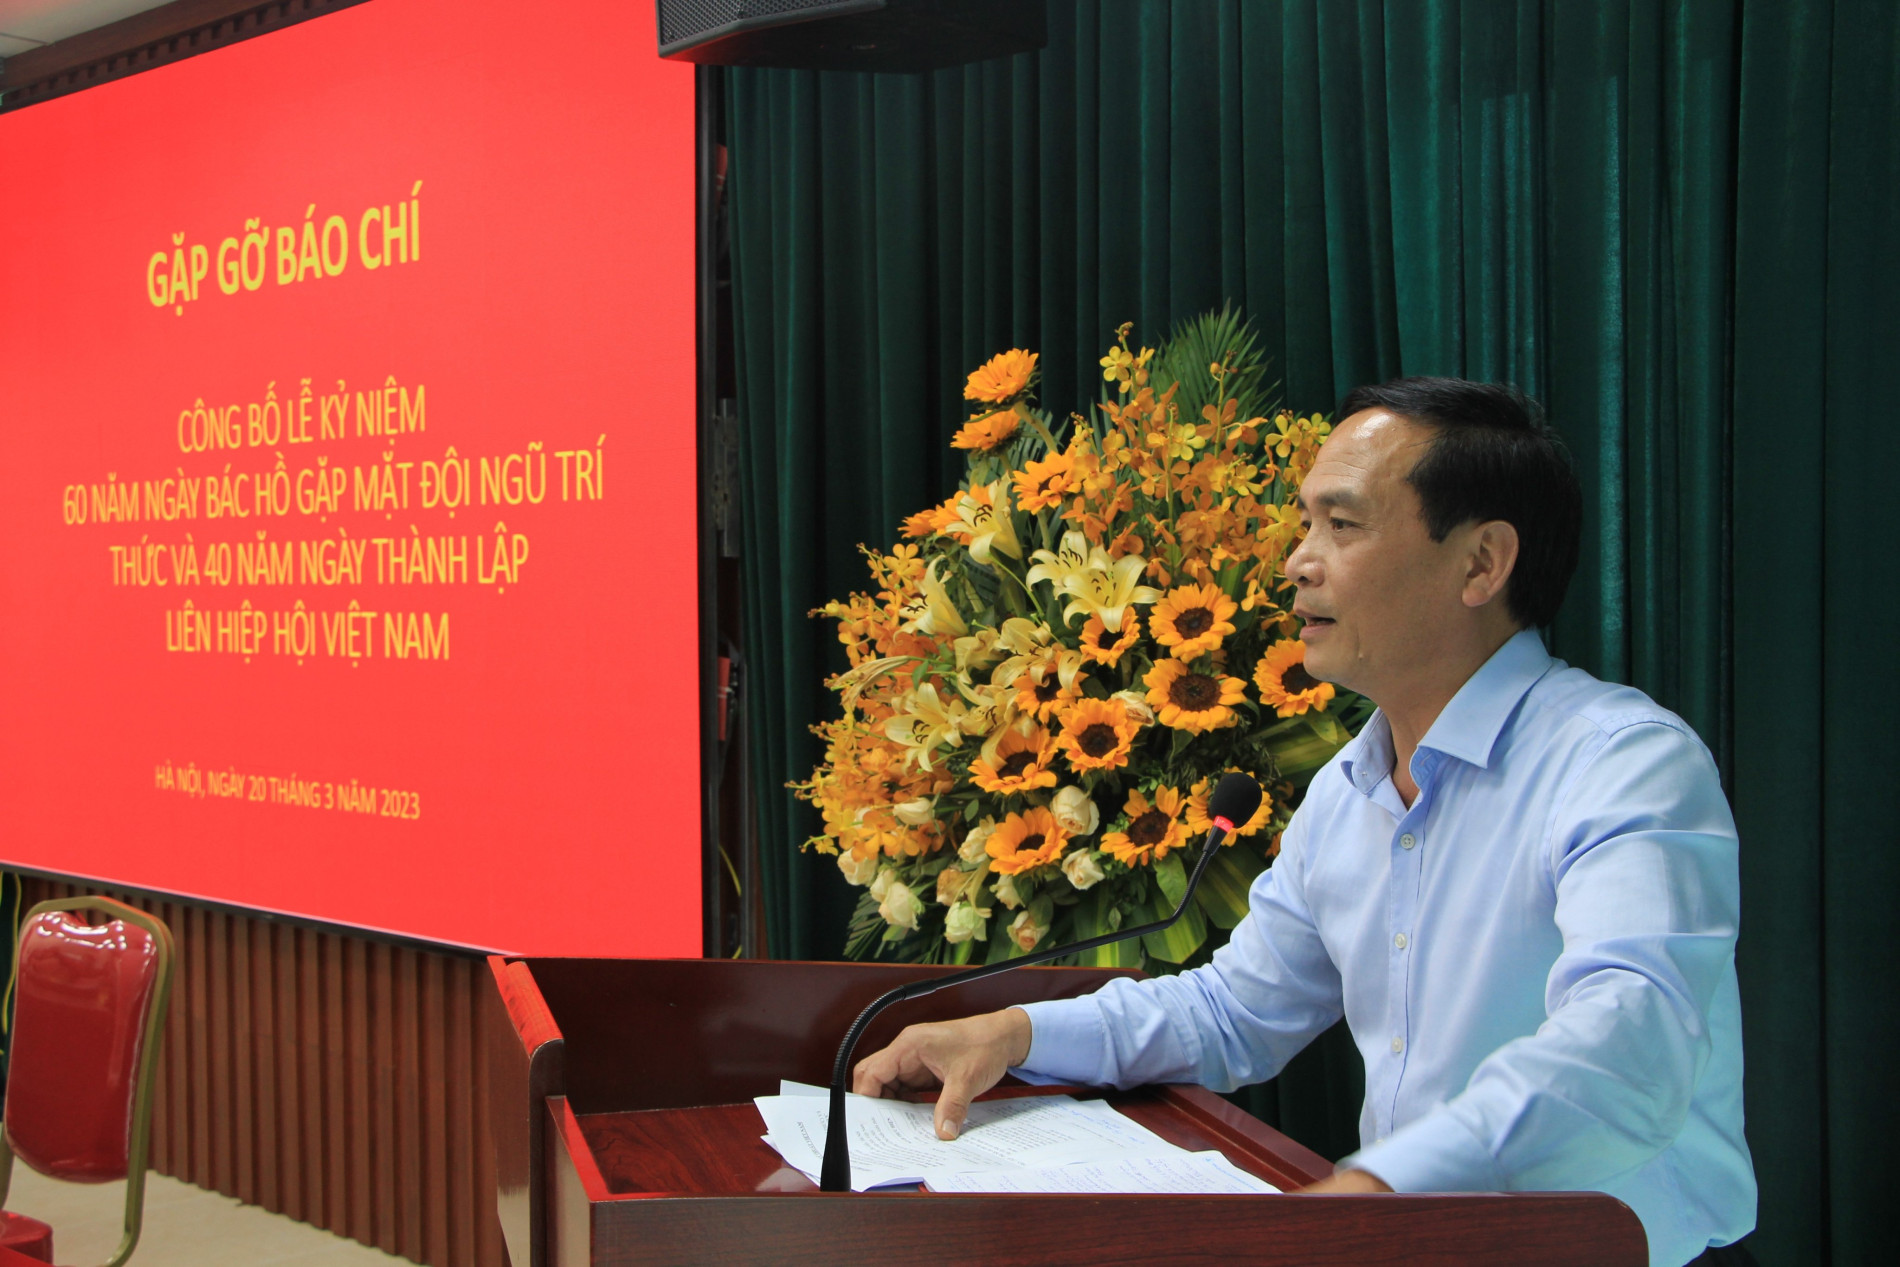 Phó Giáo Sư, Tiến sỹ Phạm Ngọc Linh, Phó Chủ tịch Liên hiệp Hội Việt Nam phát biểu tại họp báo